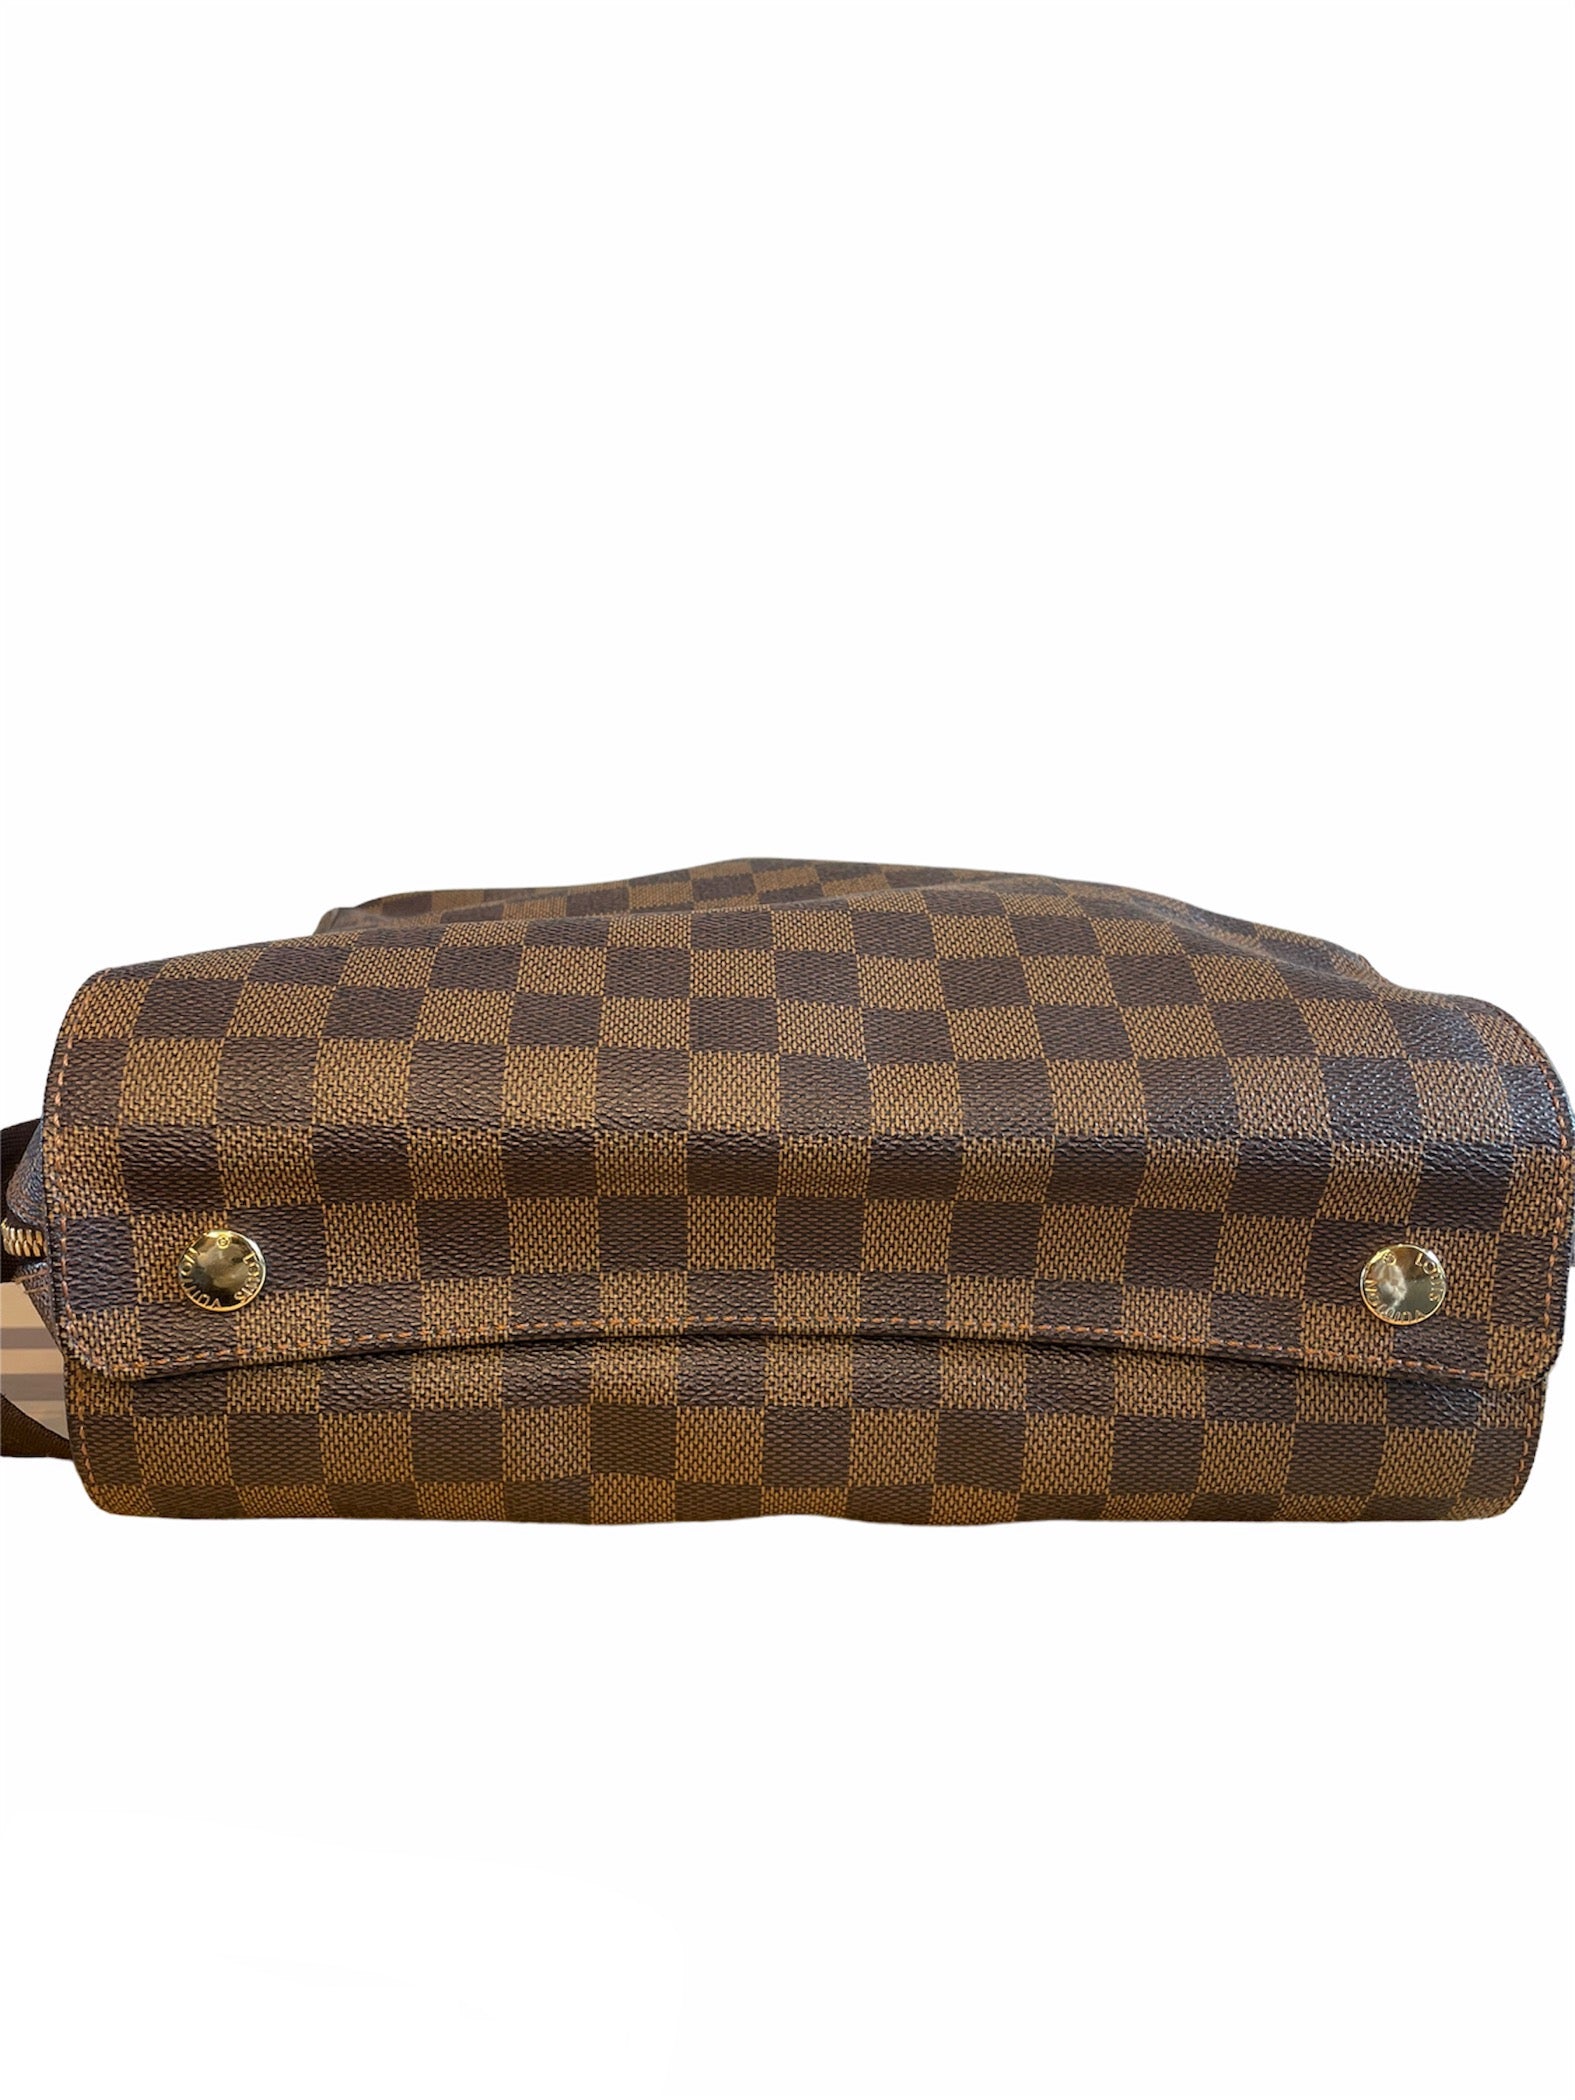 Louis Vuitton Naviglio Messenger Bag